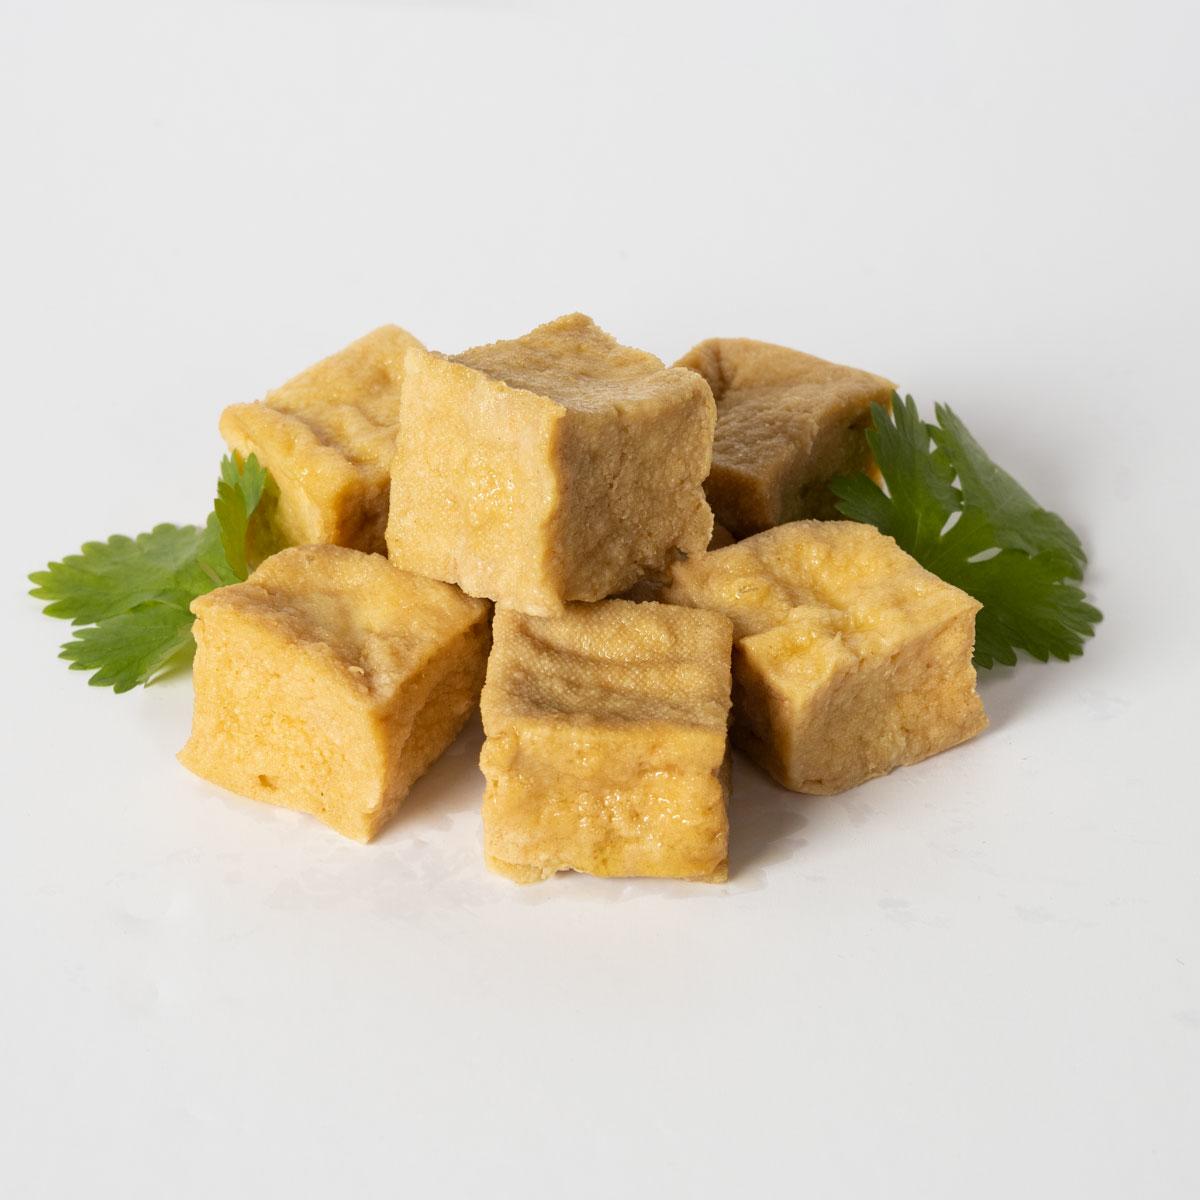 Yipin's Fried Tofu (400 g)'